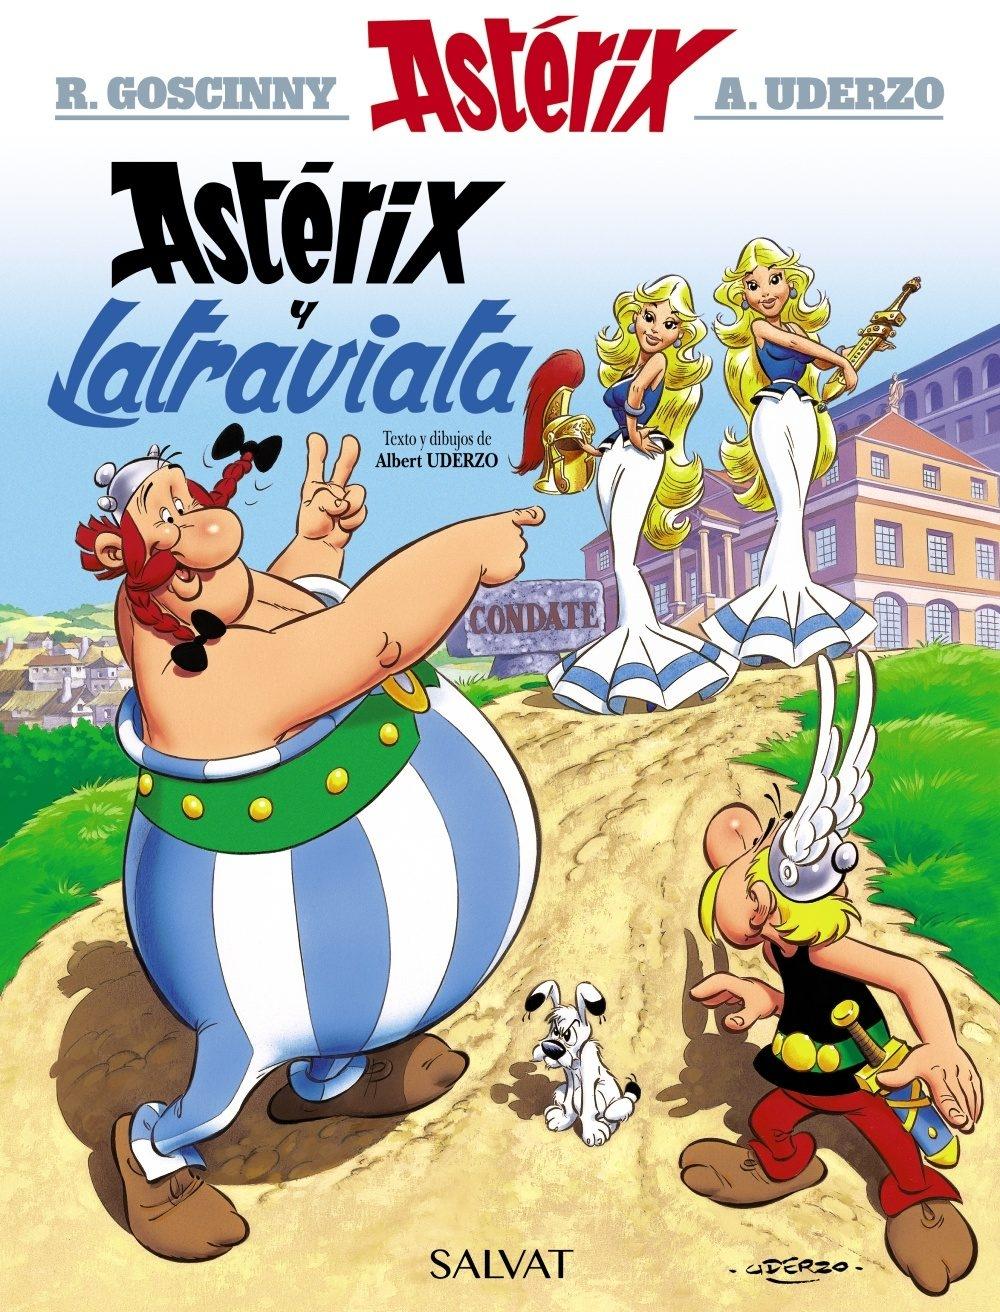 Astérix y la Traviata